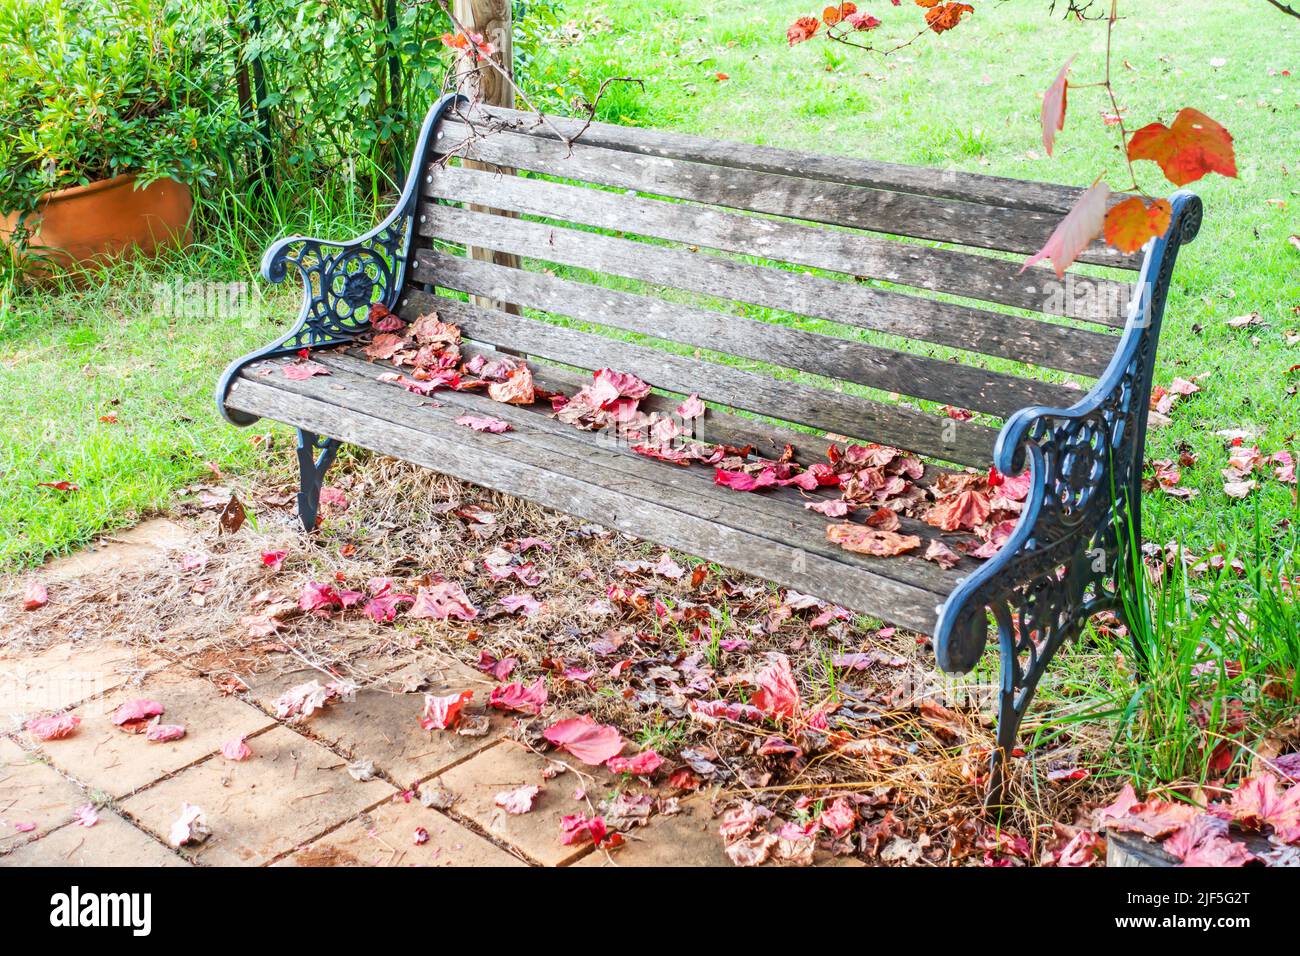 Hierro fundido y banco de madera jardín en otoño. Foto de stock